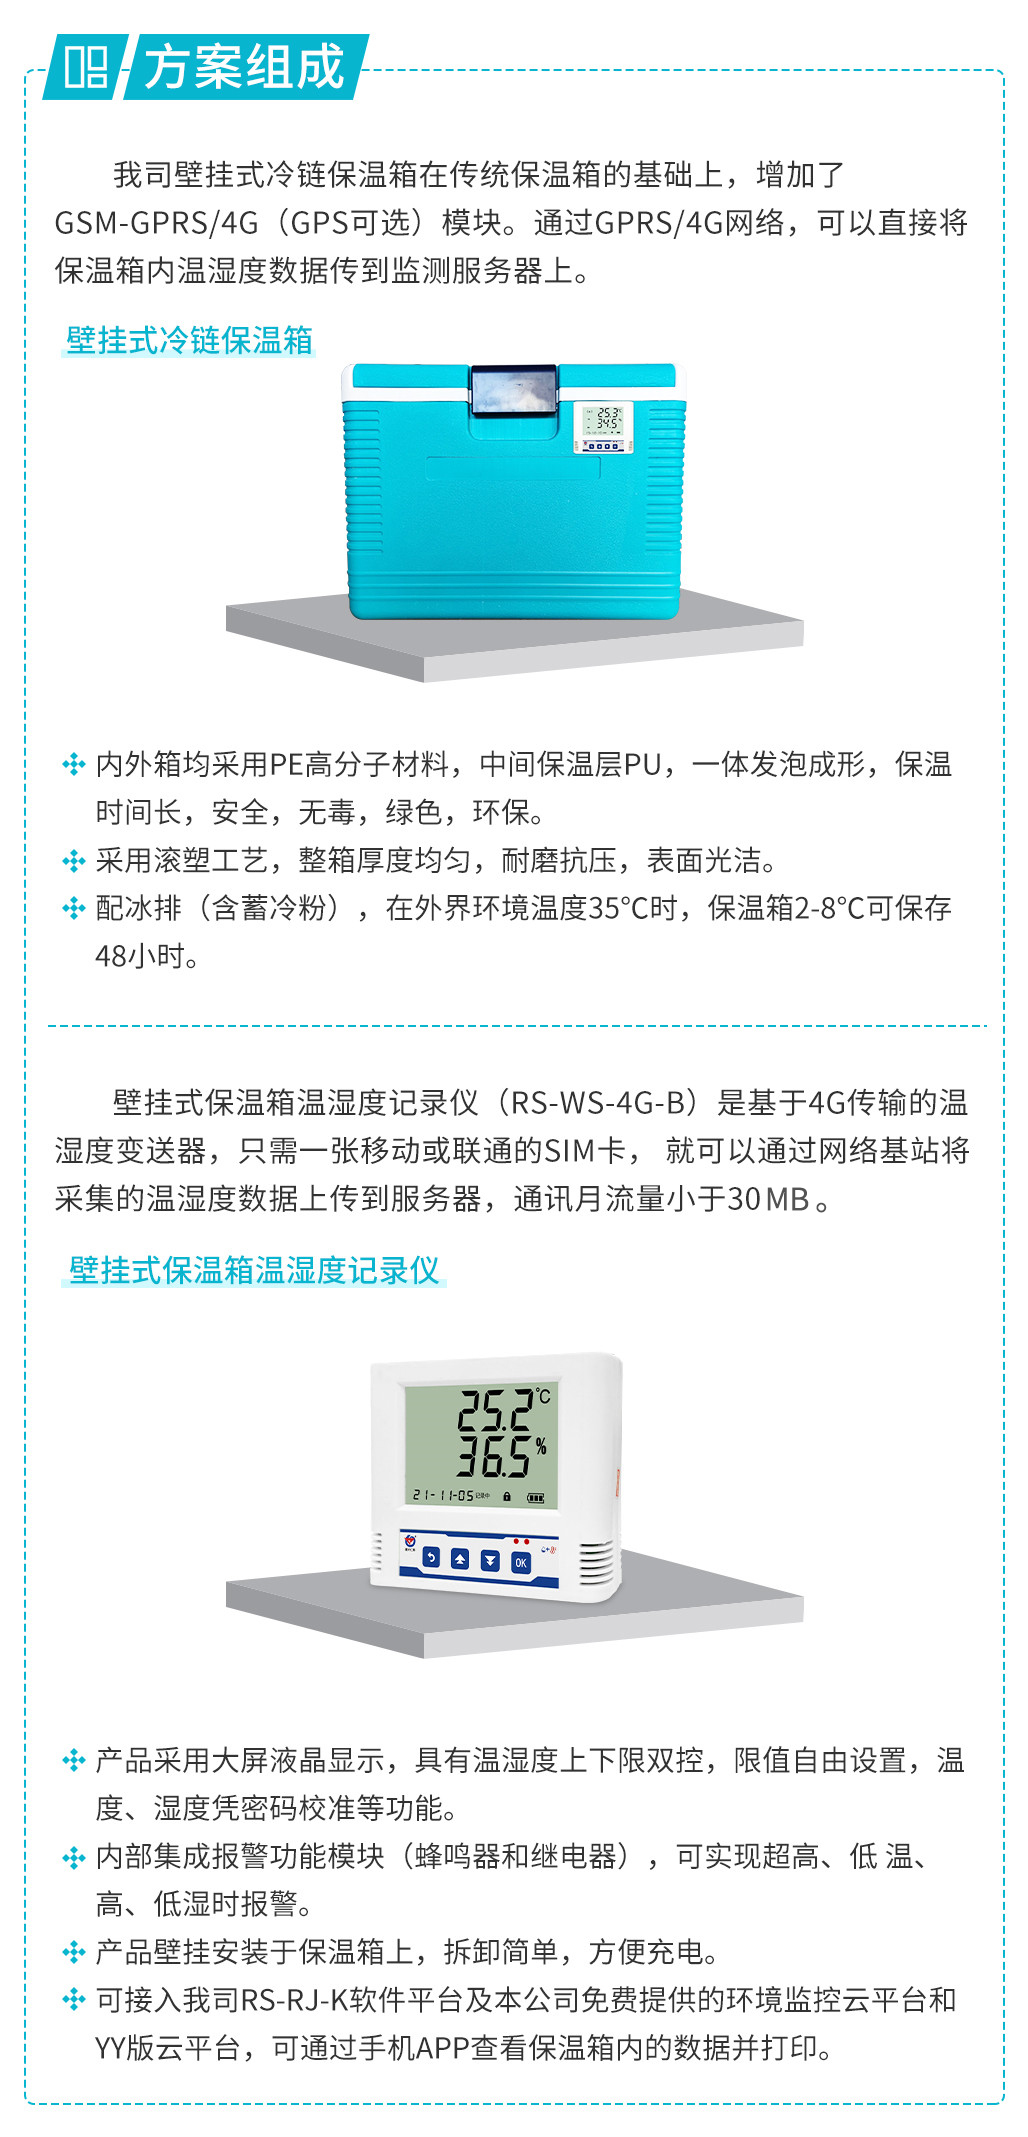 壁挂式保温箱温湿度监测系统解决方案.jpg